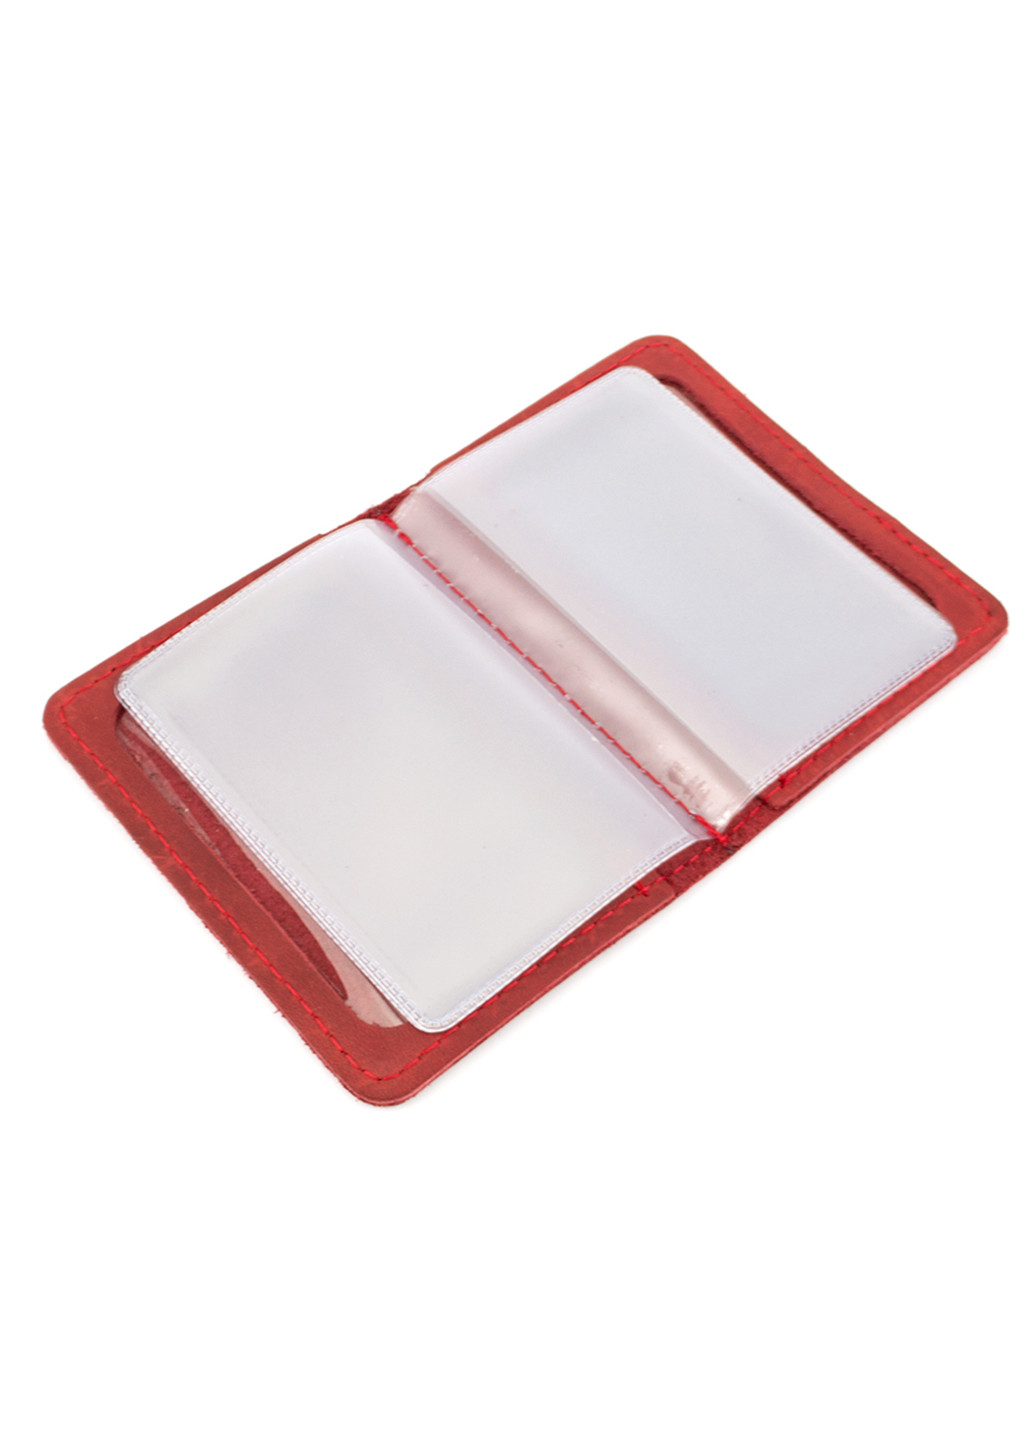 Женский подарочный набор в коробке №43 красный (ключница, обложка на ID паспорт) HandyCover (206521423)